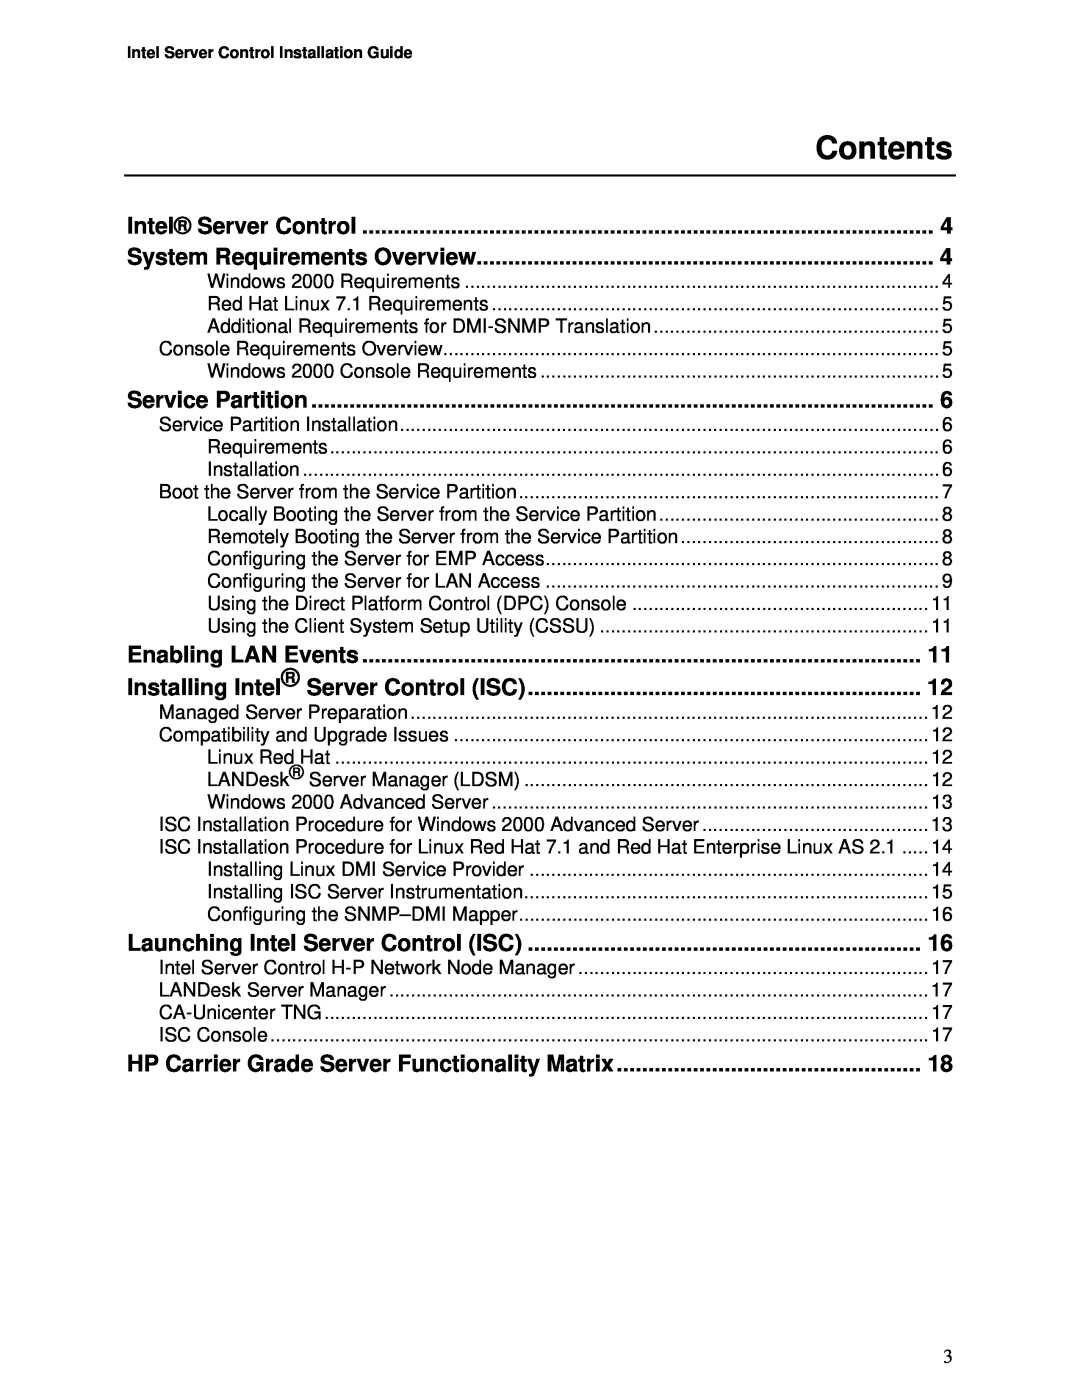 Intel cc2300, cc3300 manual Contents 